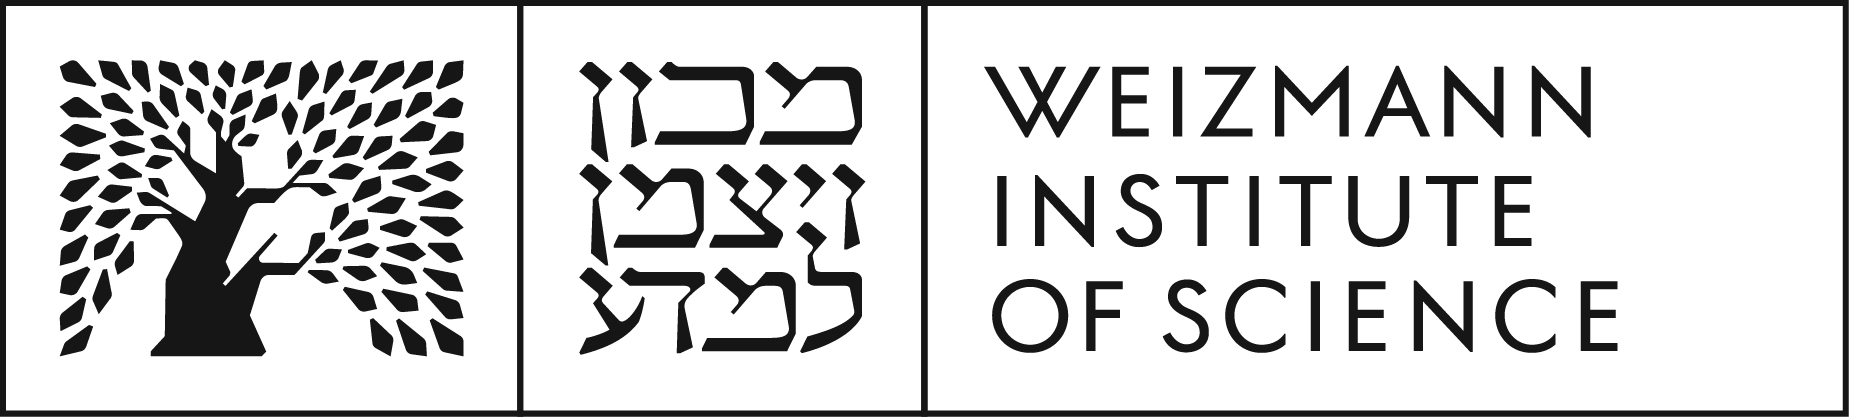 Weizmann institute